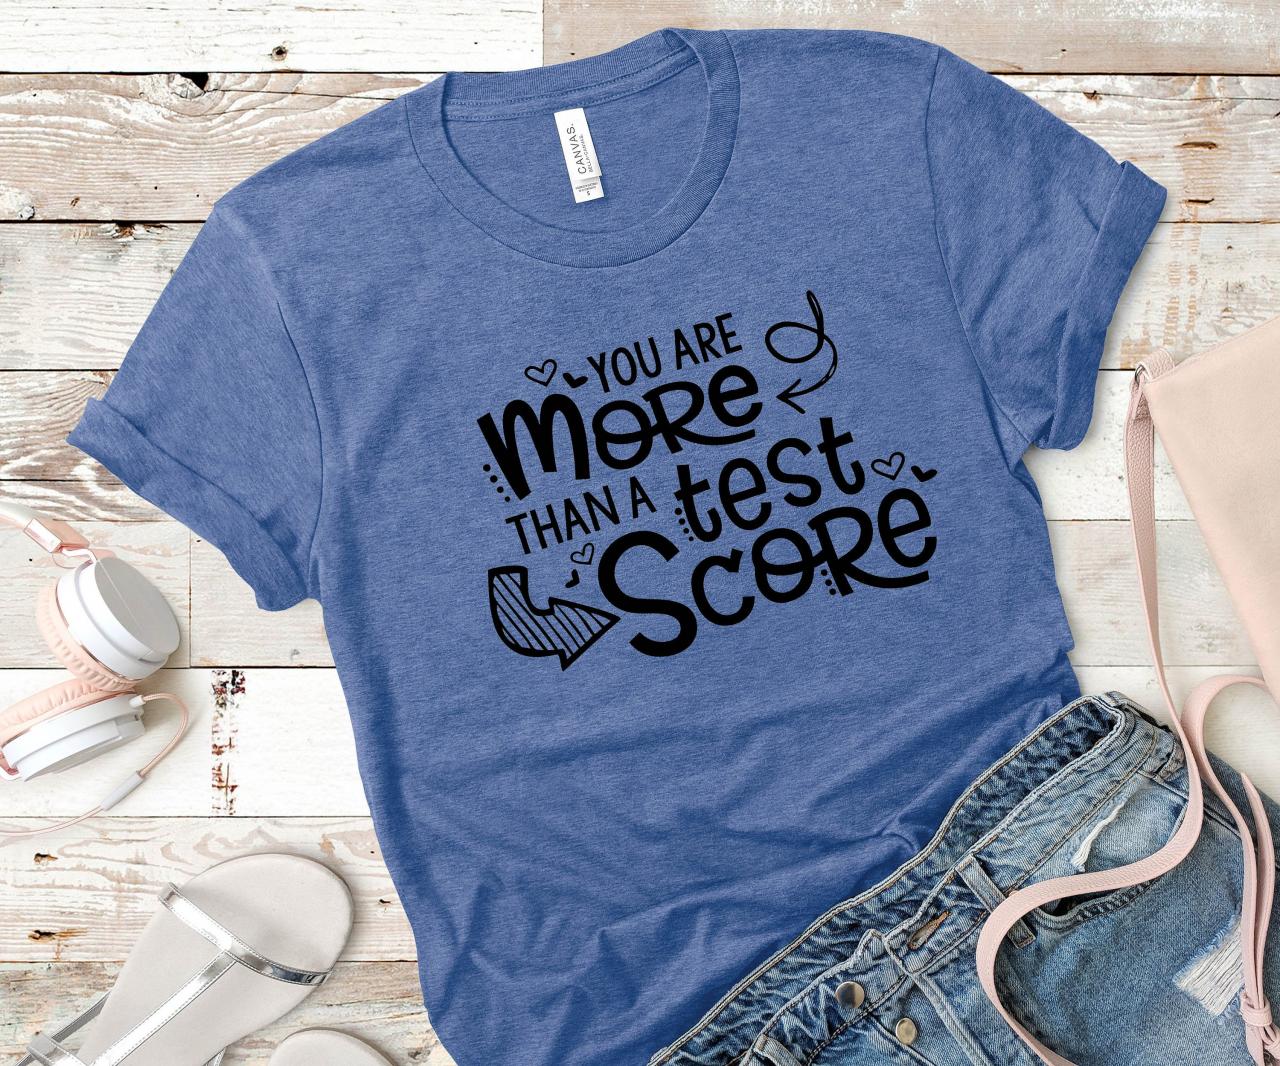 Teacher t-shirts/ You are more than a test score/ Teacher gifts/ Teacher tees/ Teacher Appreciation/ Teacher love/ School t-shirts